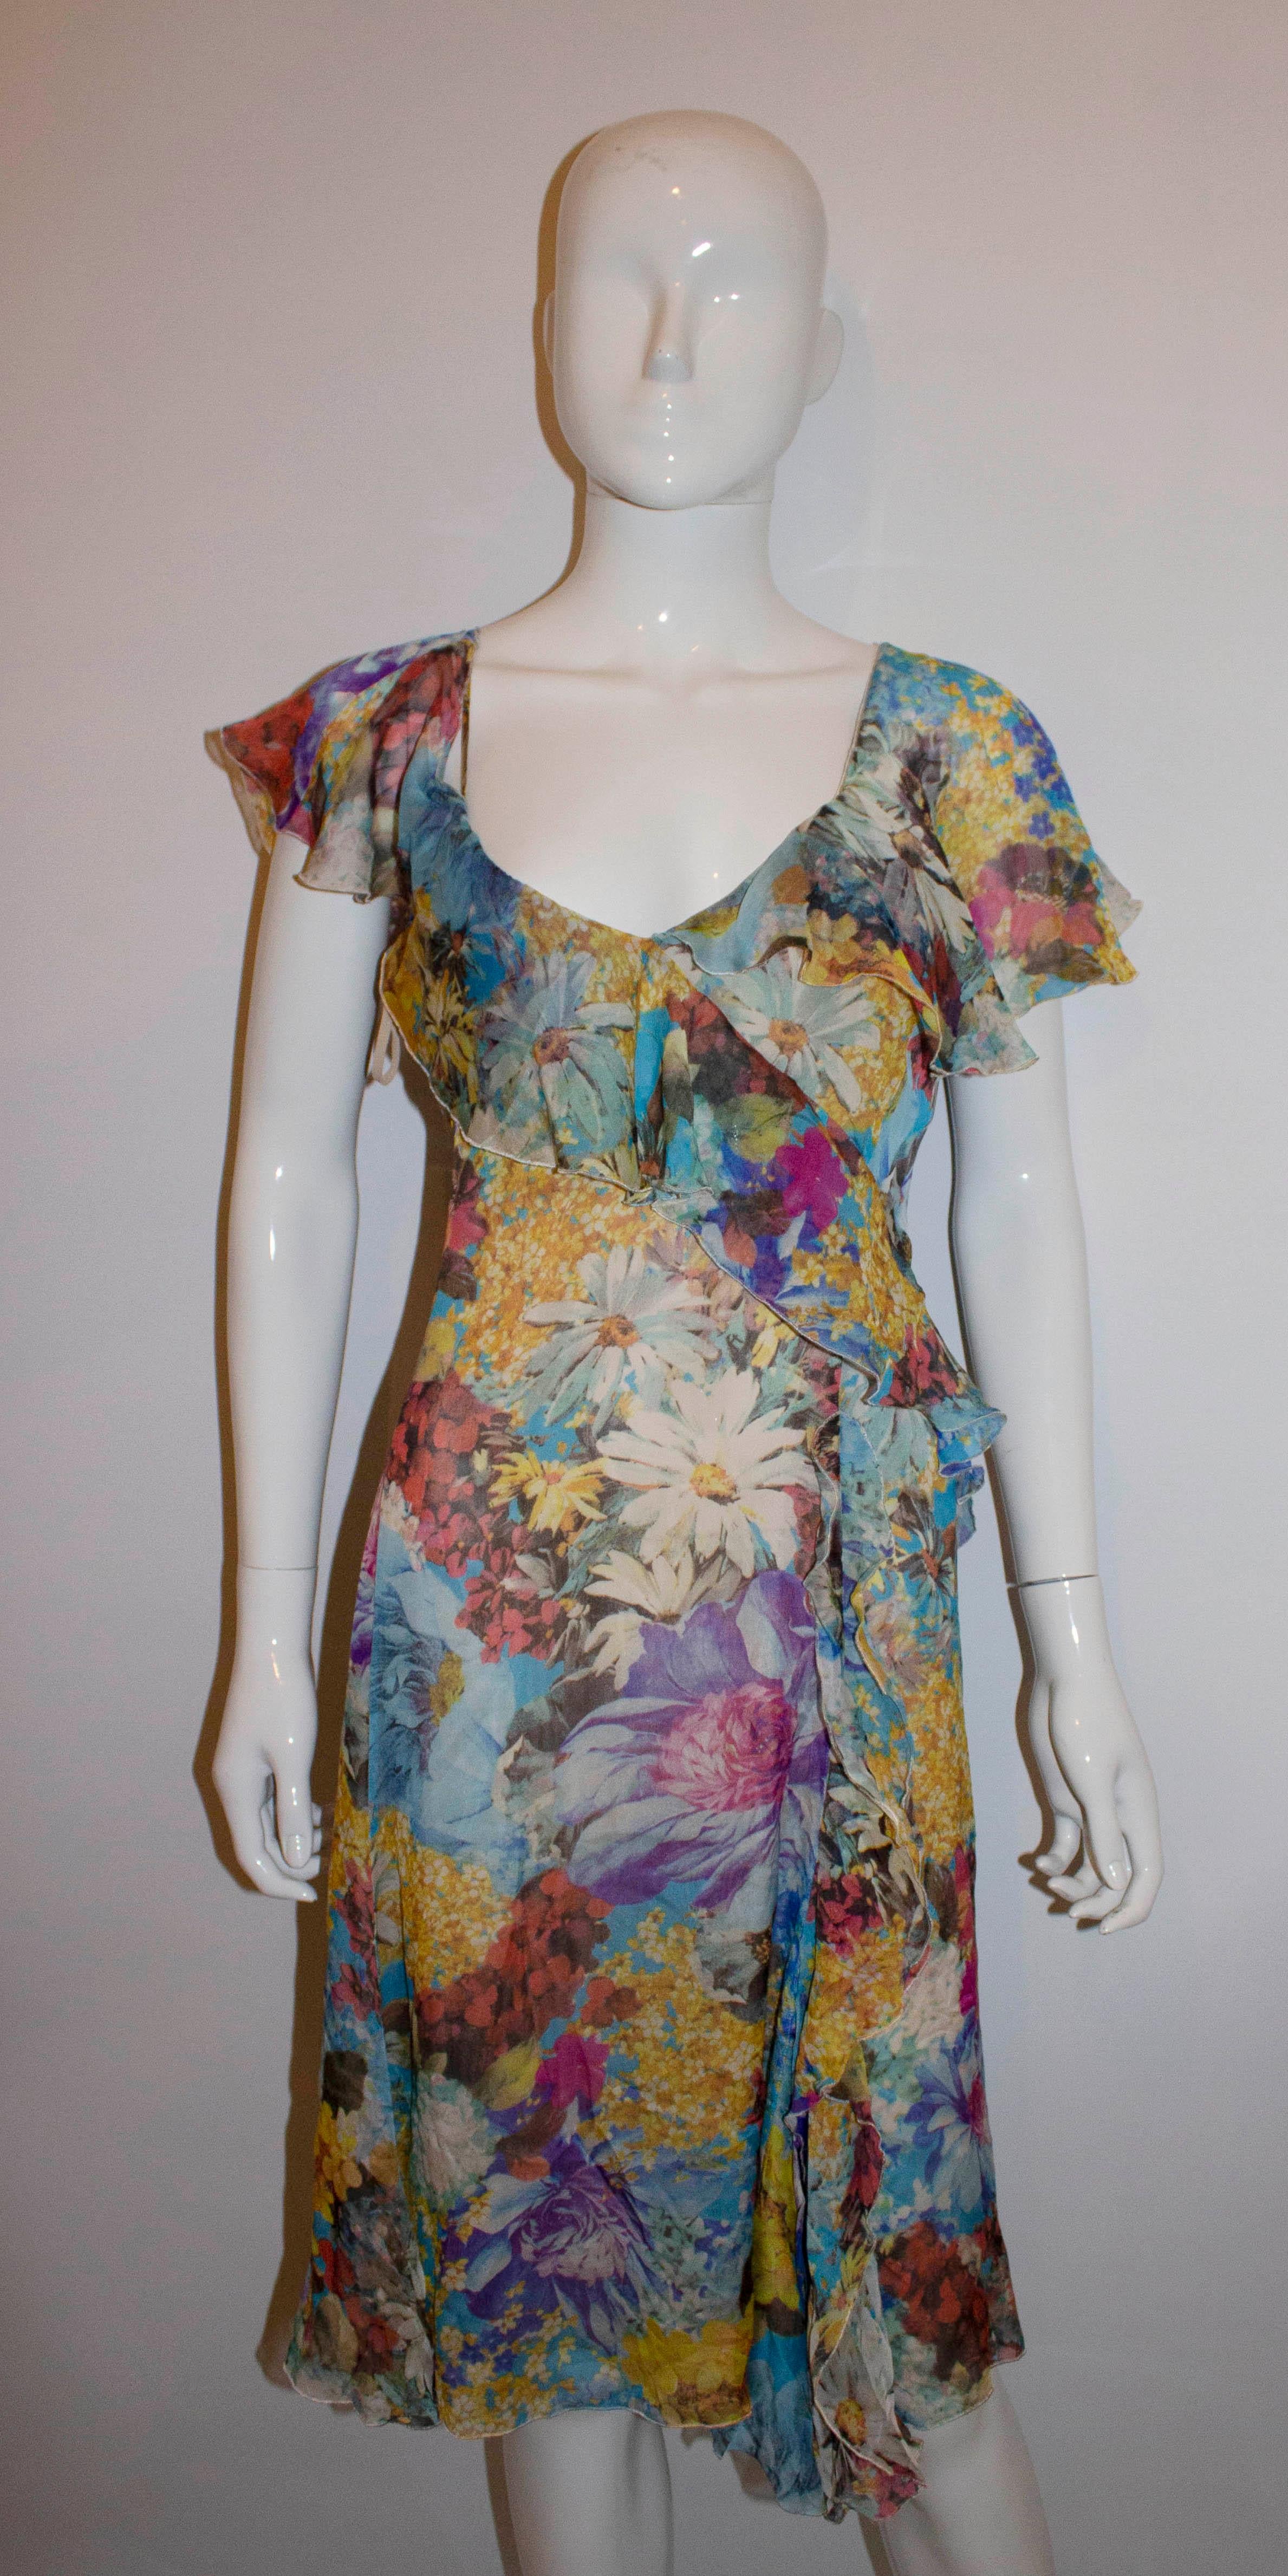 Ein tolles Kleid für den Sommer von Emporio Armani. Das in vielen Farben erhältliche Kleid hat einen Rüschenausschnitt, ist vollständig gefüttert und hat einen zentralen Reißverschluss am Rücken.
Größe EU Italienisch 40 Maße: Büste 36'', Länge 41''